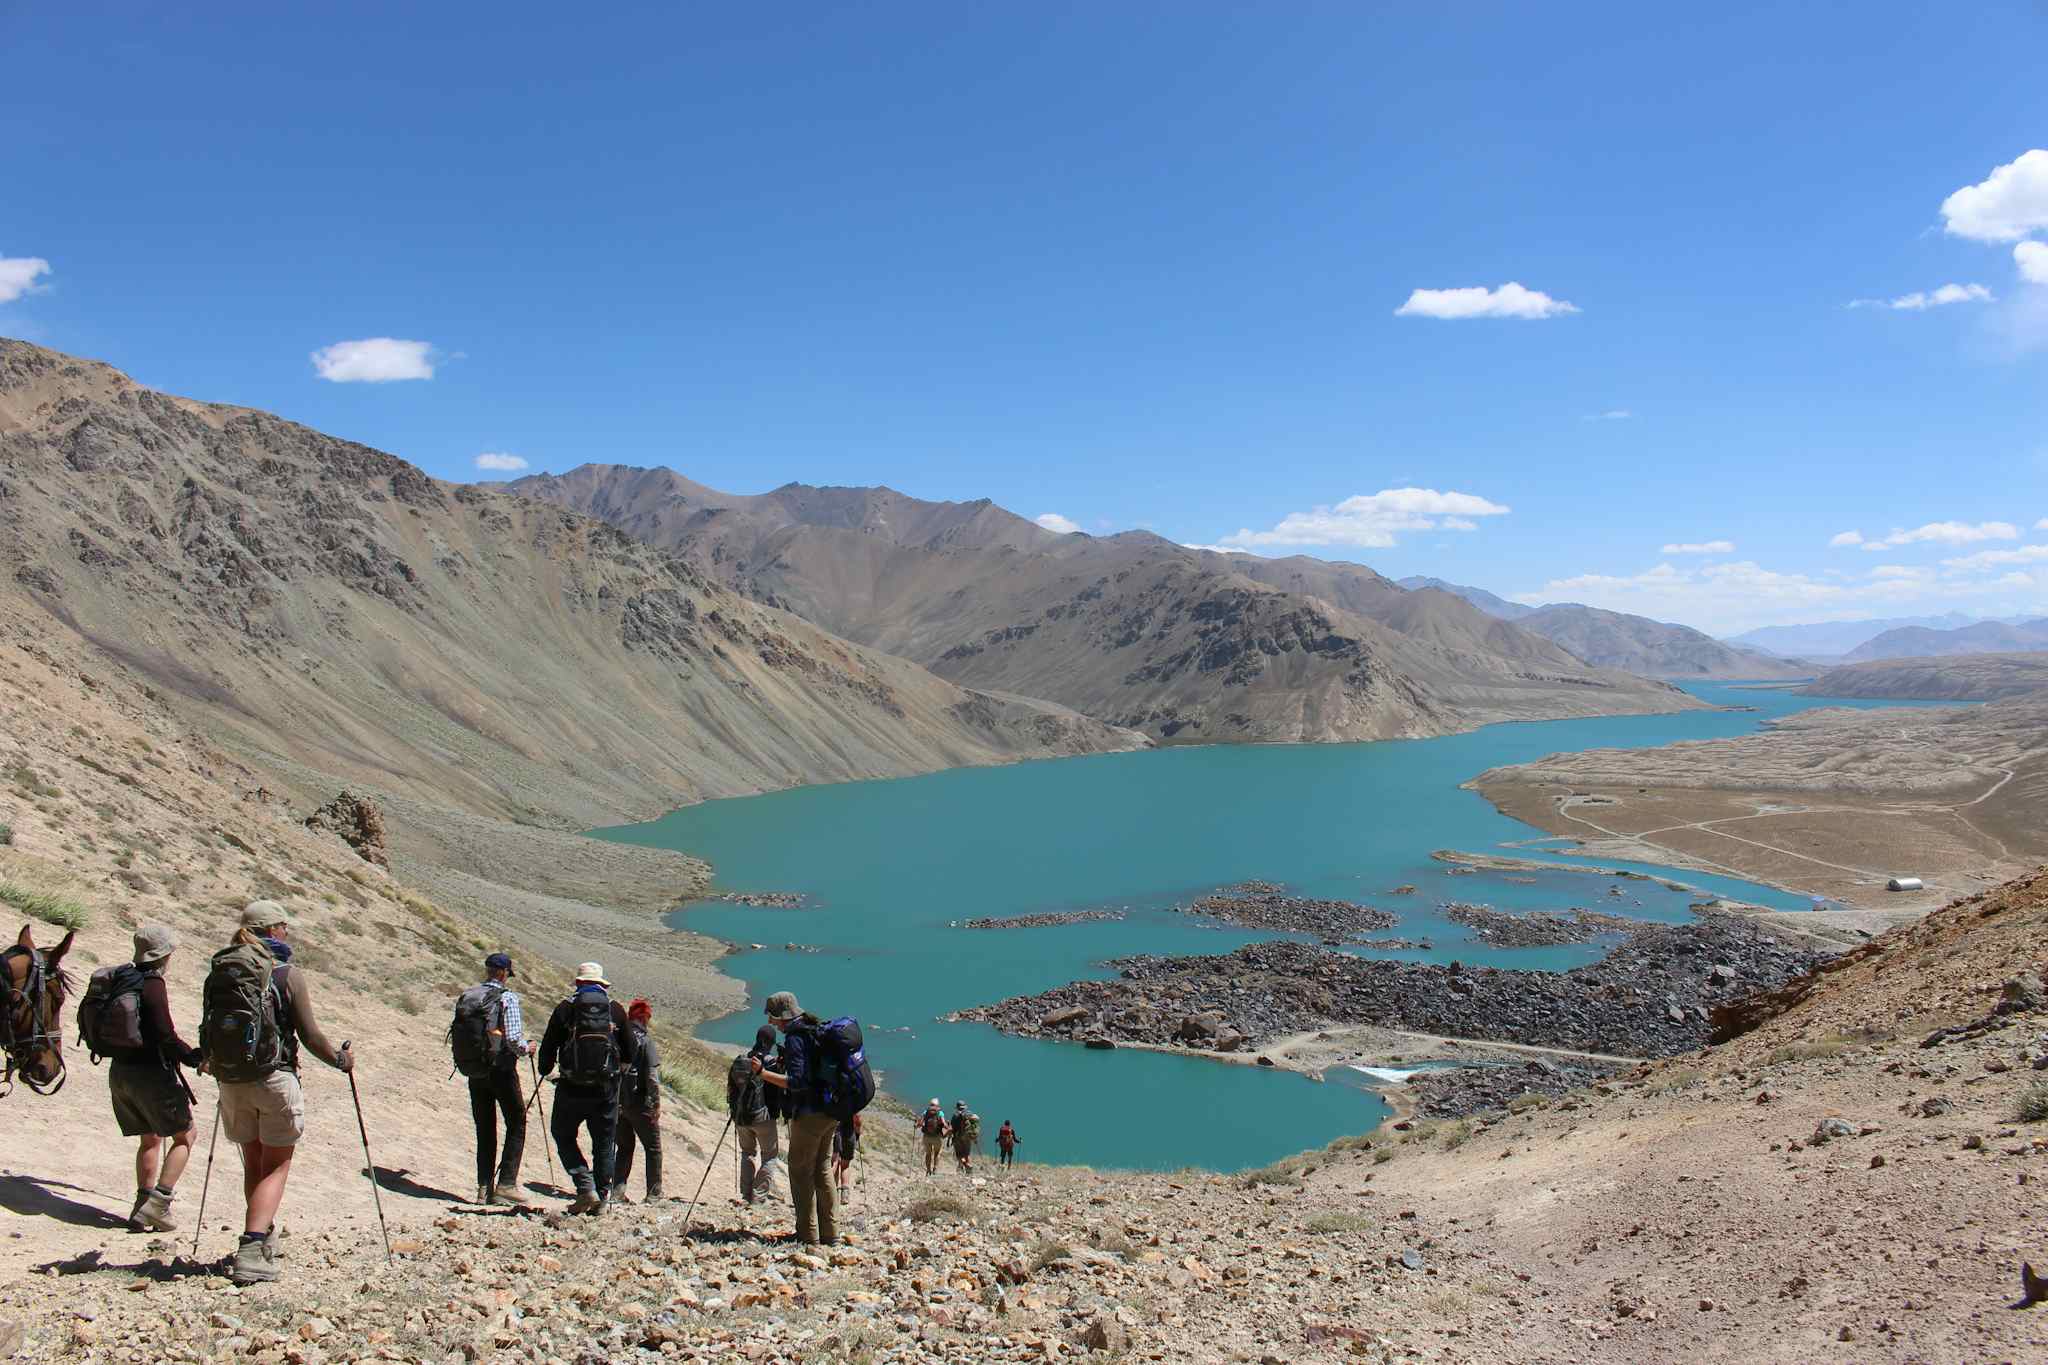 Yashilkul lake, Pamir Mountains, Tajikistan
Host image: Orom Travel